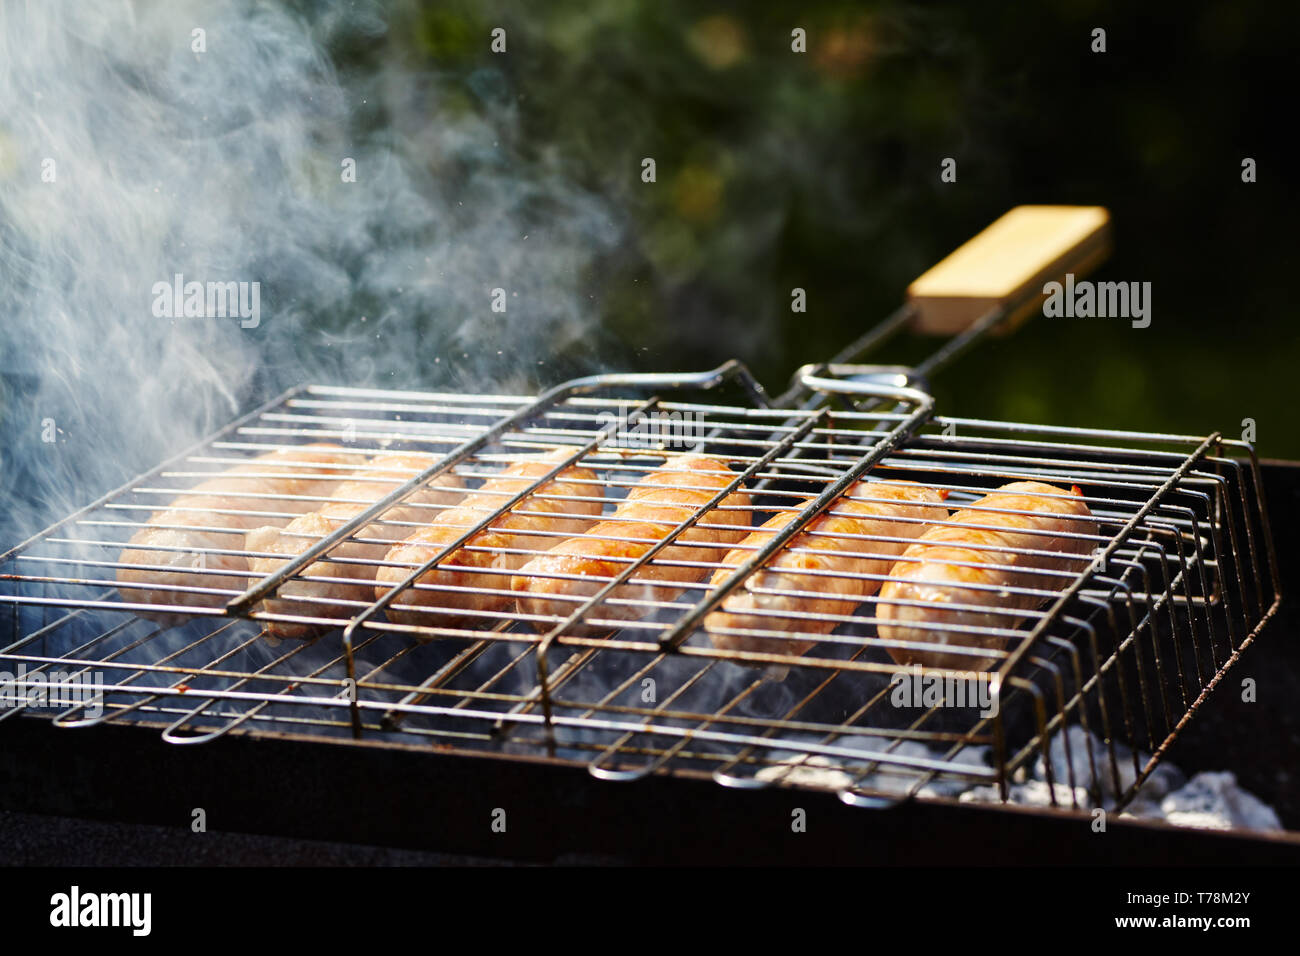 Saucisses rubicund torréfaction sur charbons. Barbecue sur le gril dans la fumée Banque D'Images